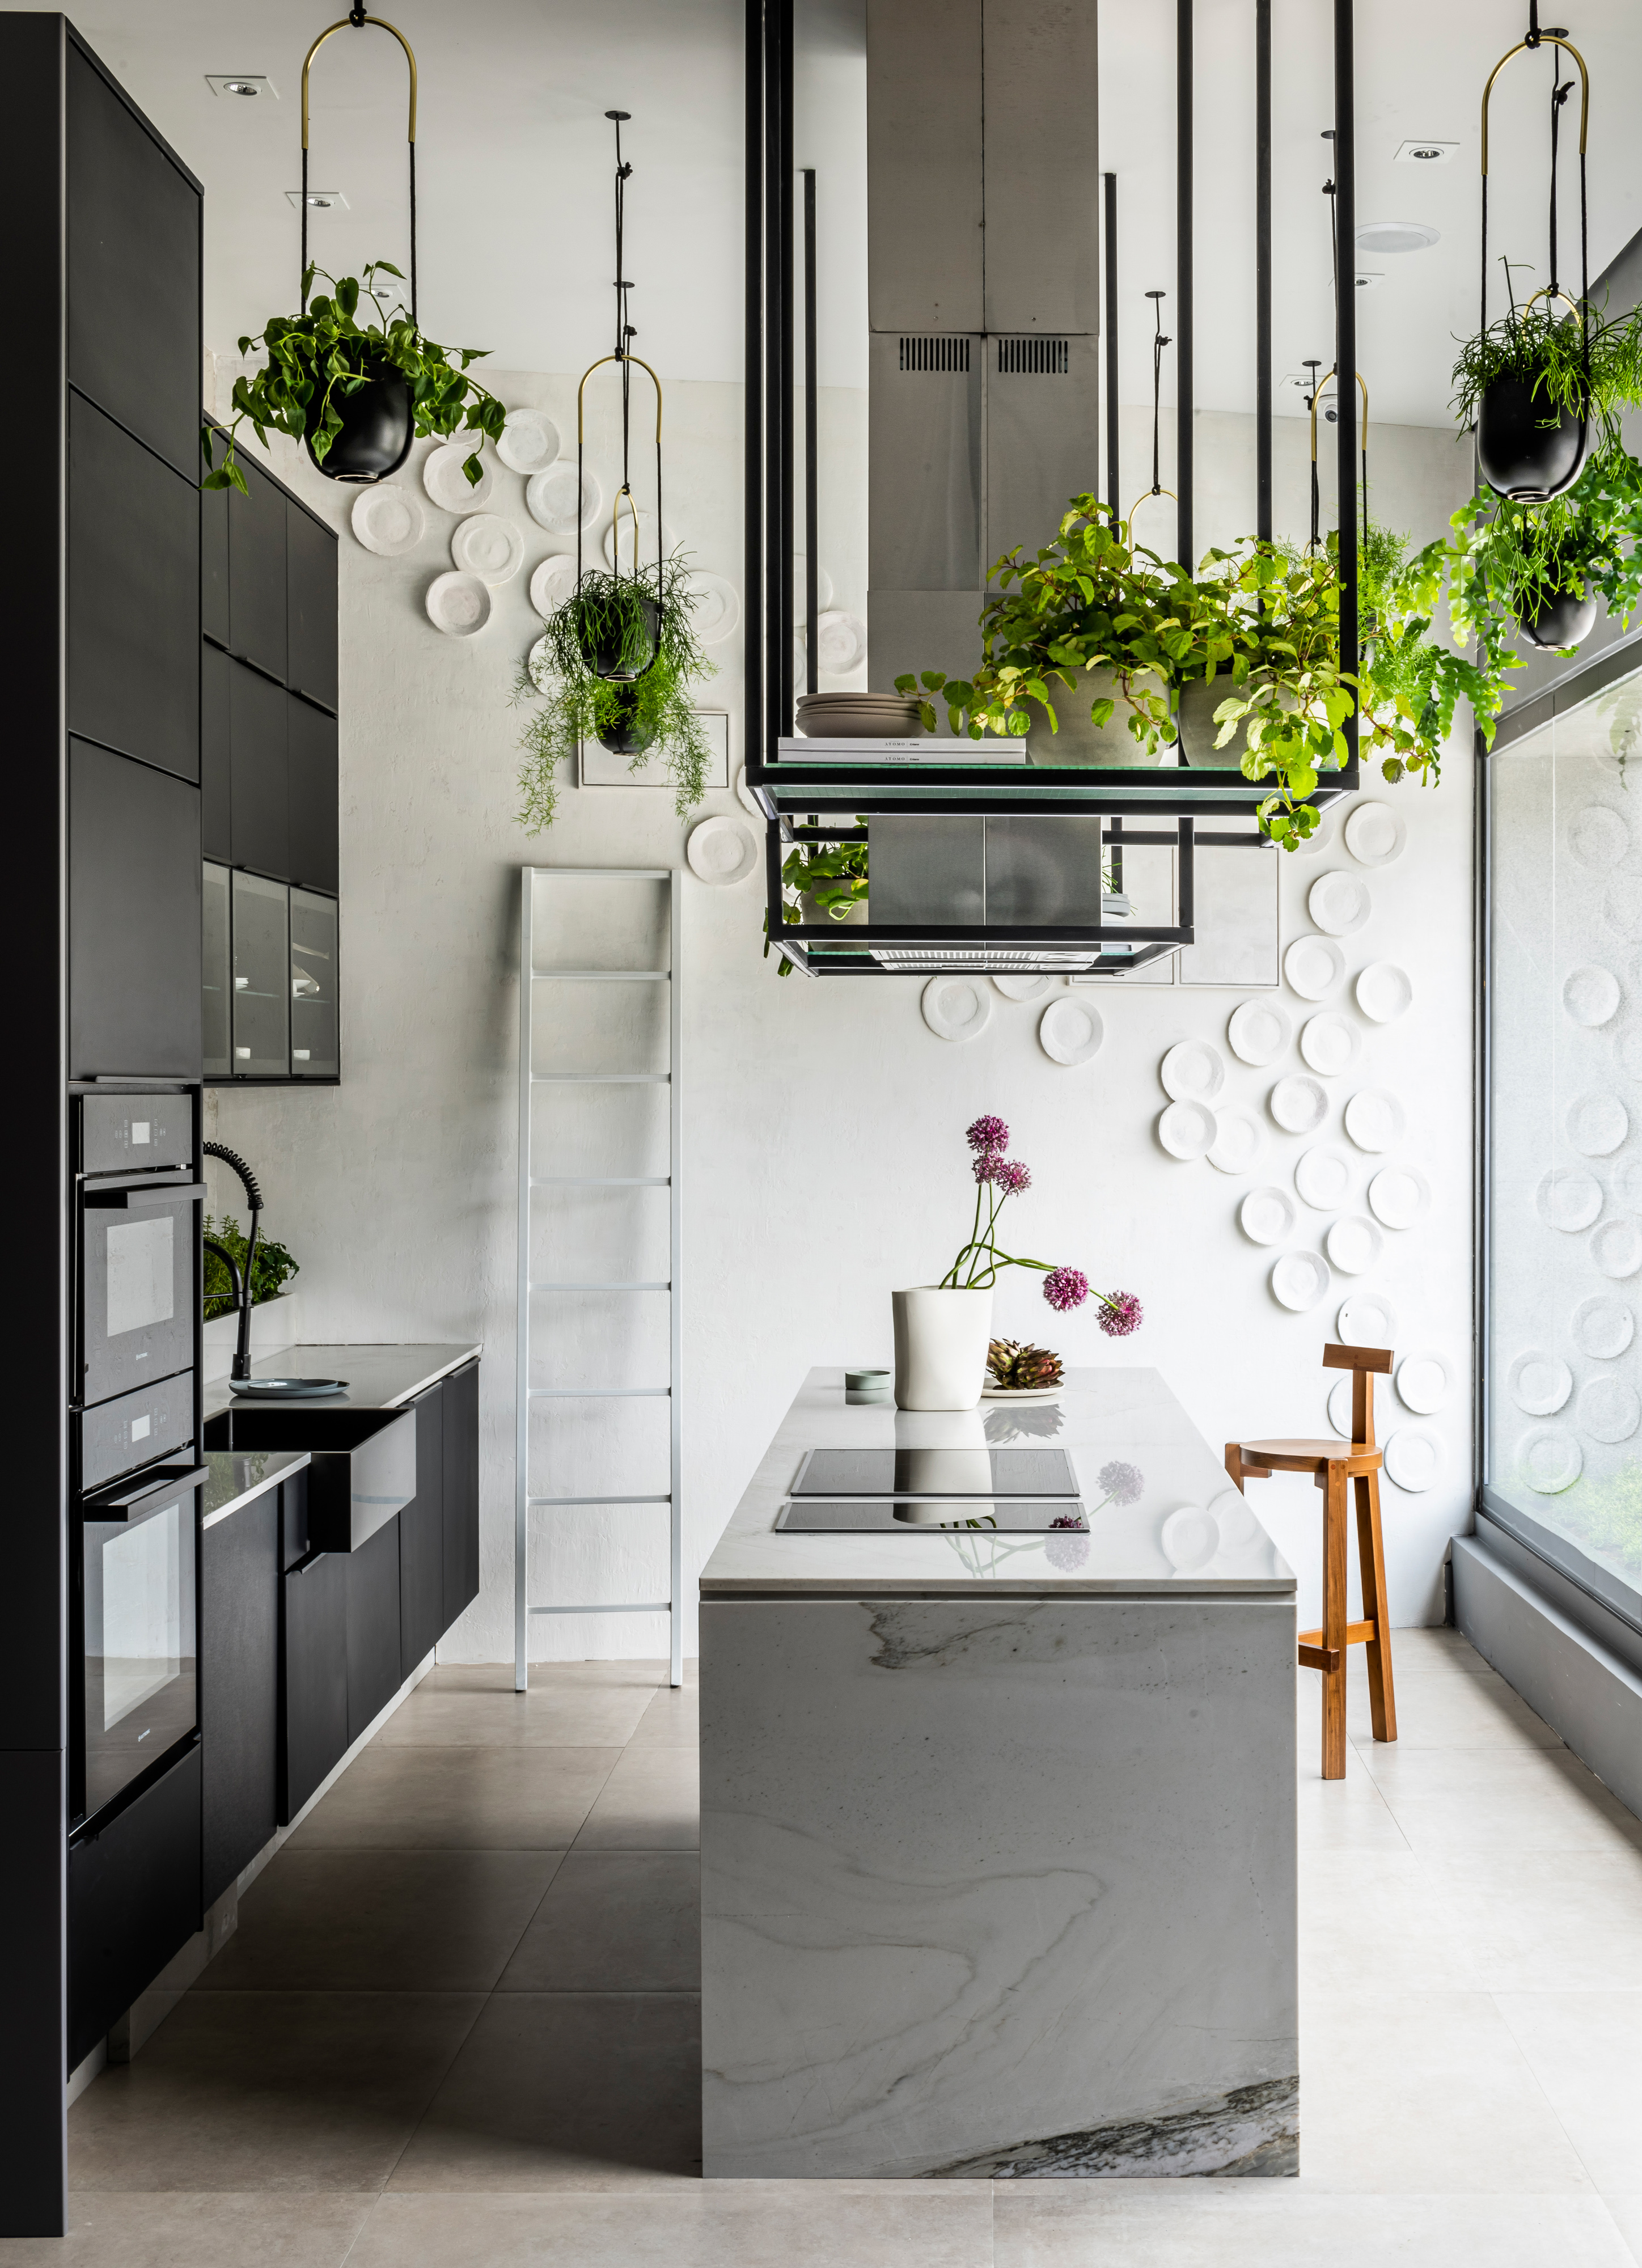 Cozinha com parede branca decorada com pratos brancos, armário de ferro de teto com muitos vasos de plantas, bancada de porcelanato com cooktop, armários preto e piso porcelanato neutro.